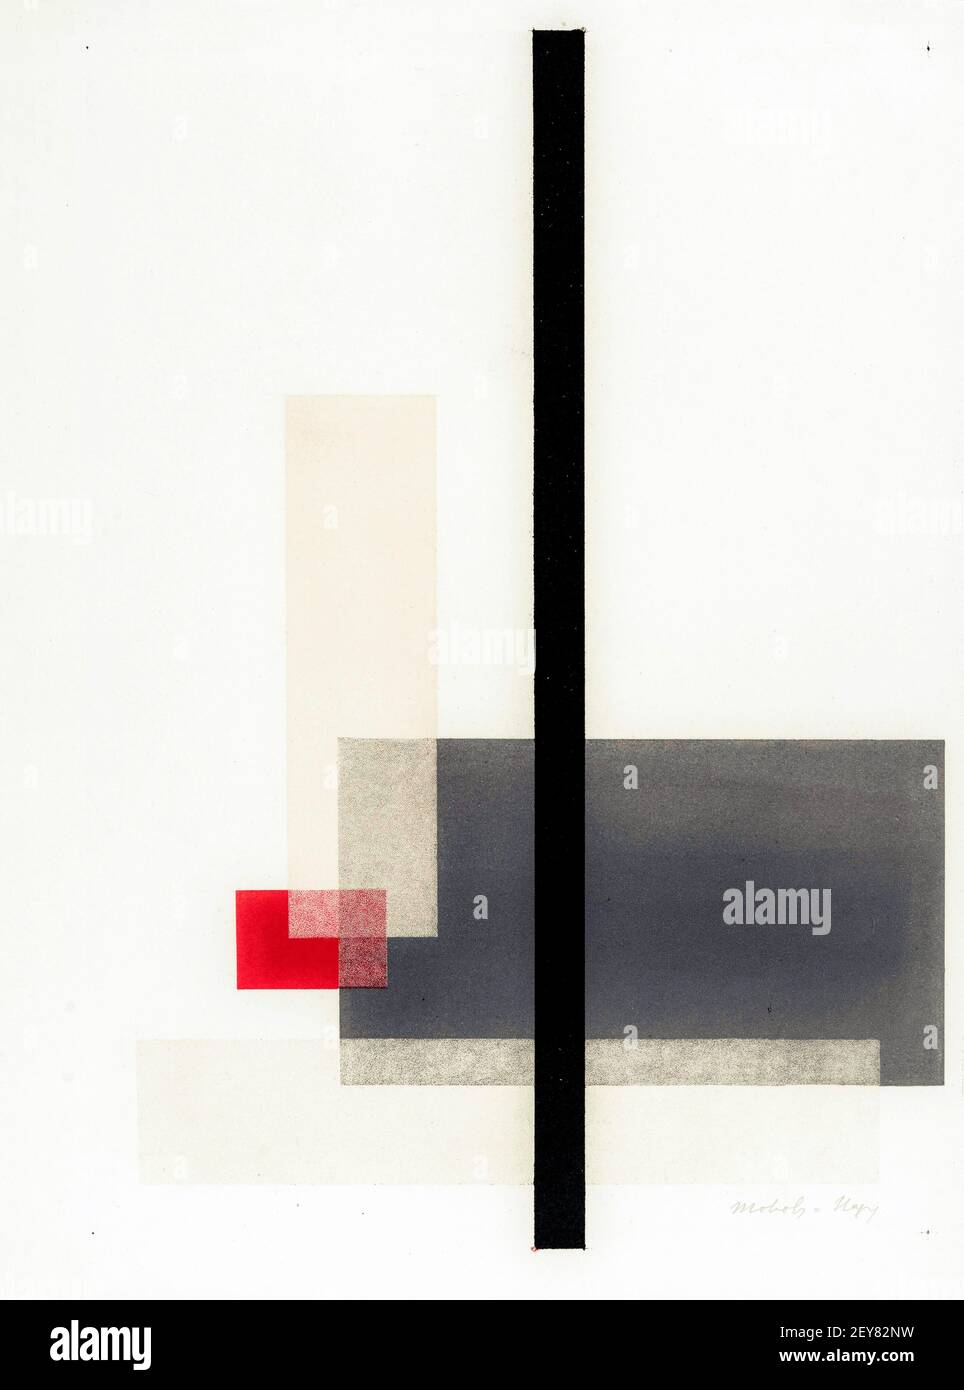 Moholy-Nagy. 'Composition' de l'artiste et photographe hongrois László Moholy-Nagy (n. László Weisz, 1895-1946), lithographie couleur, 1923 Banque D'Images